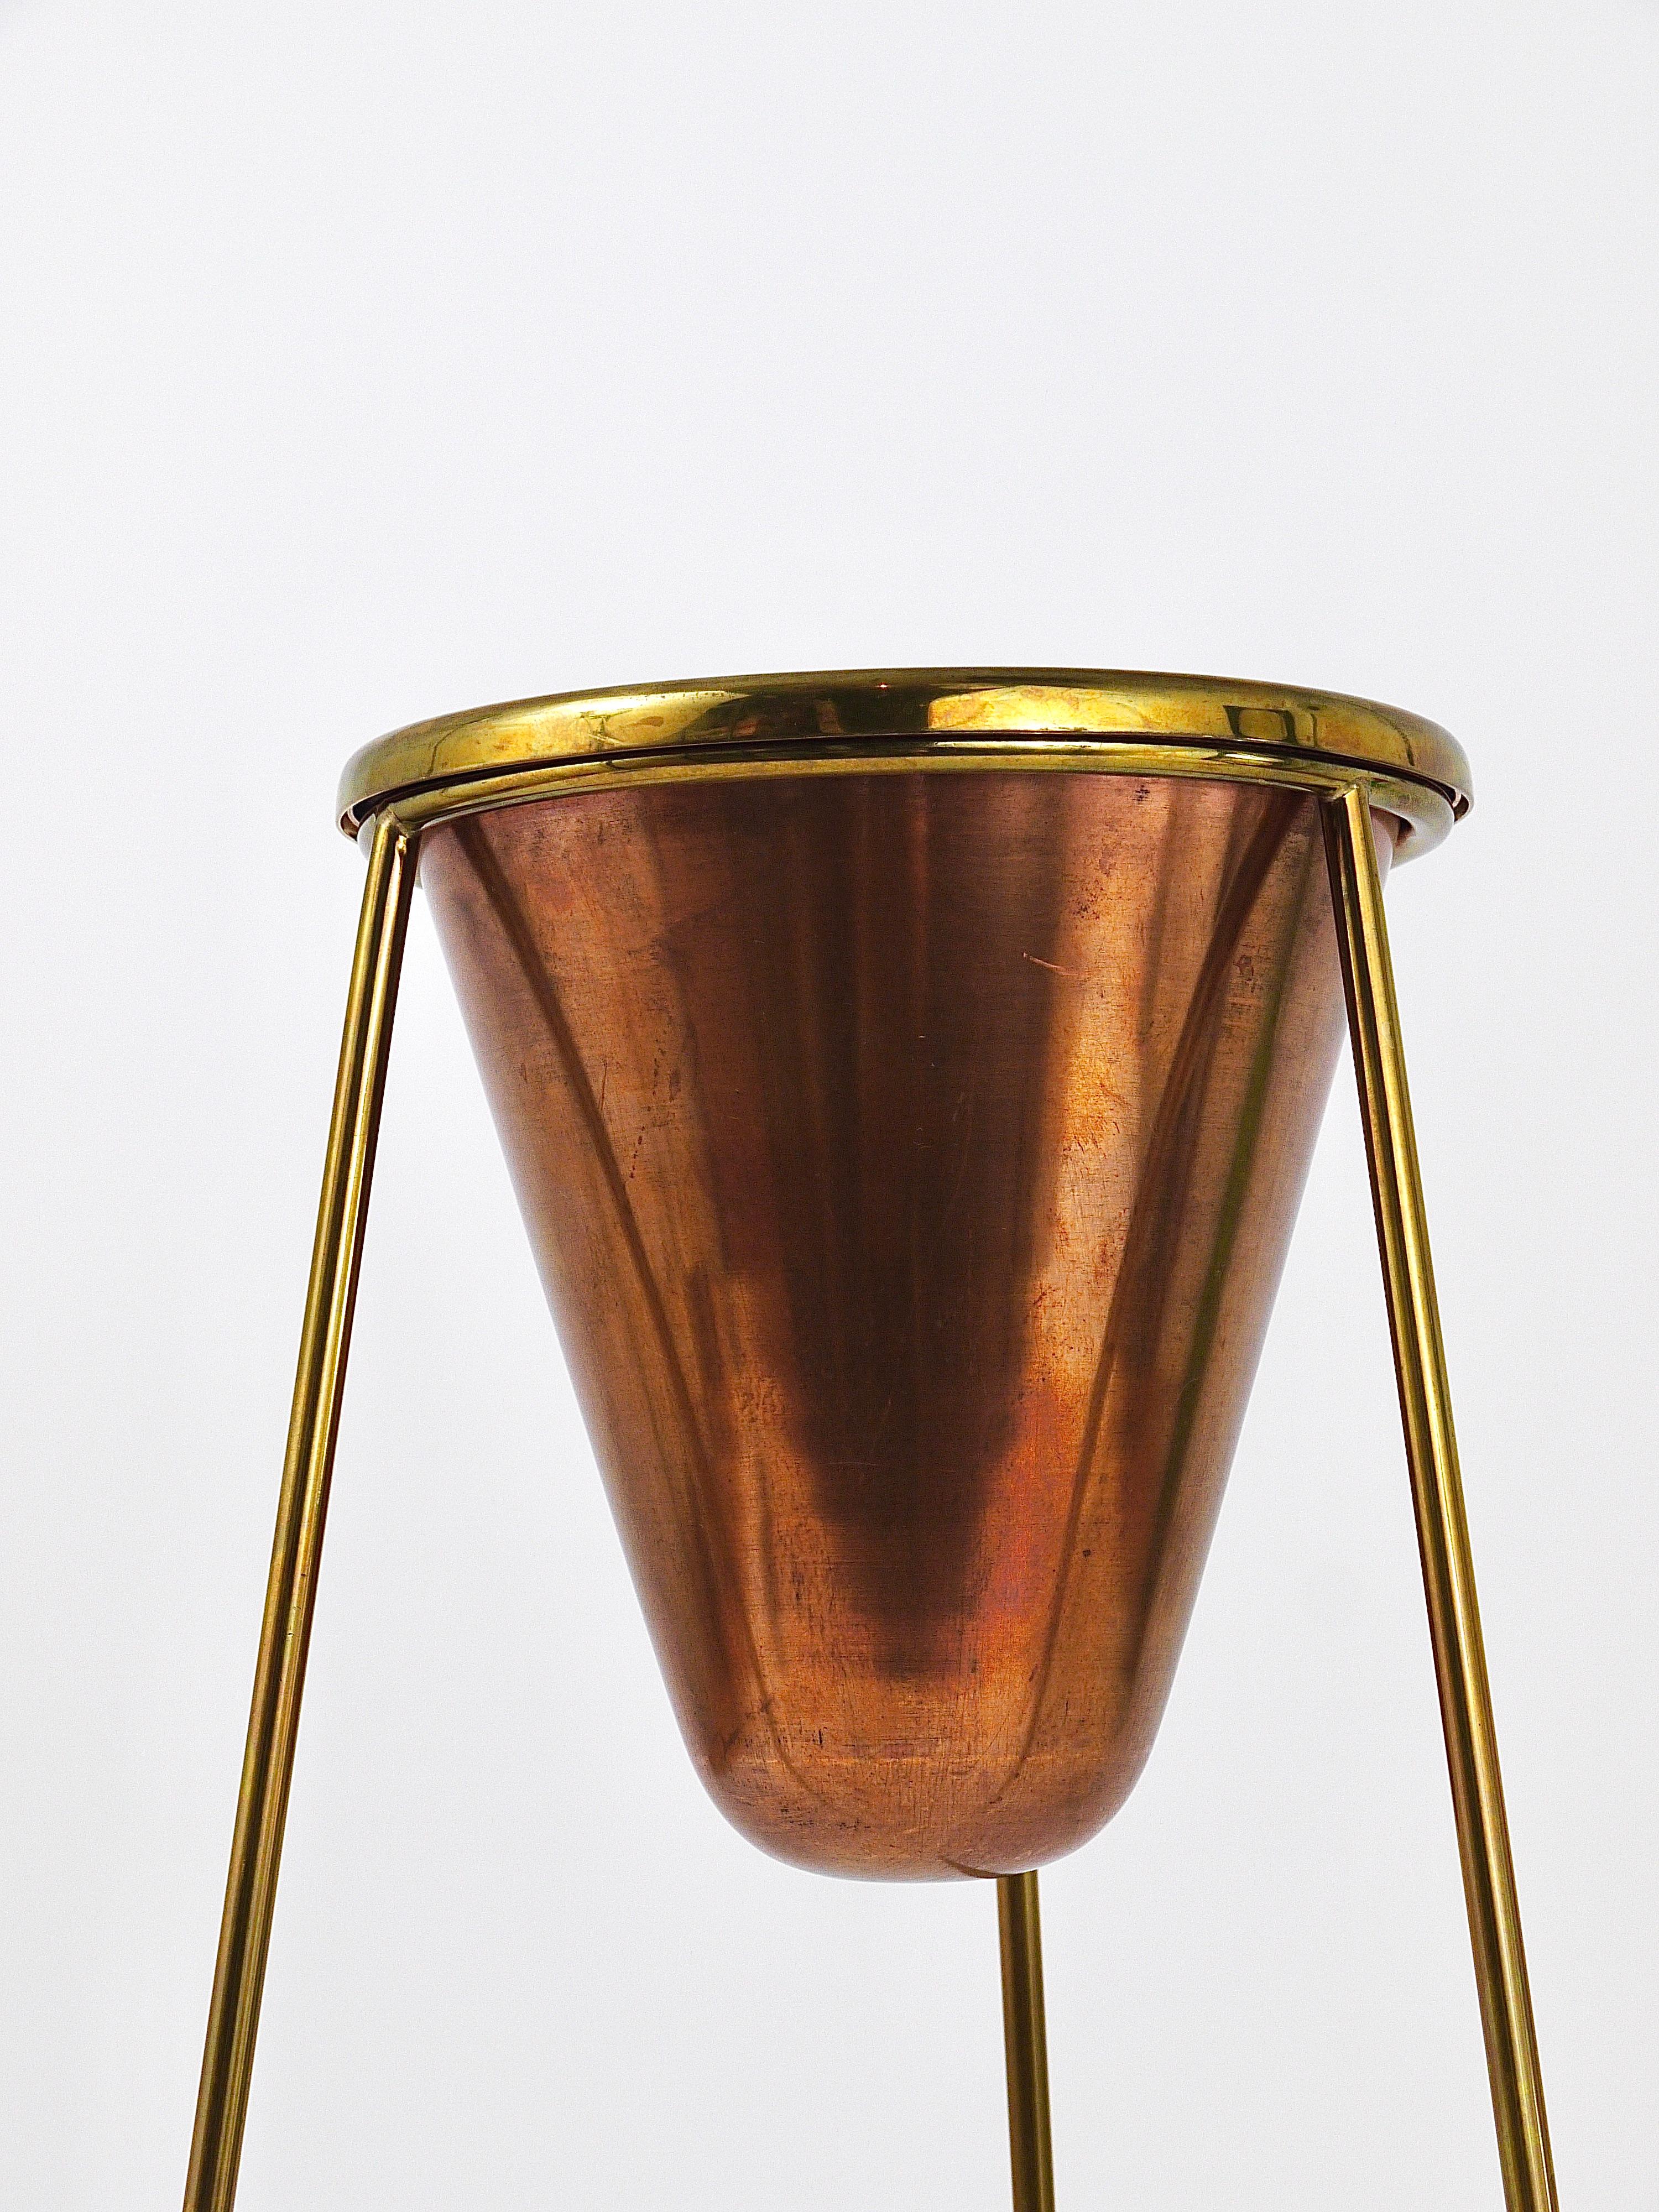 Rare Carl Aubock Copper & Brass Tripod Floor Ashtray, Austria, 1950s For Sale 3